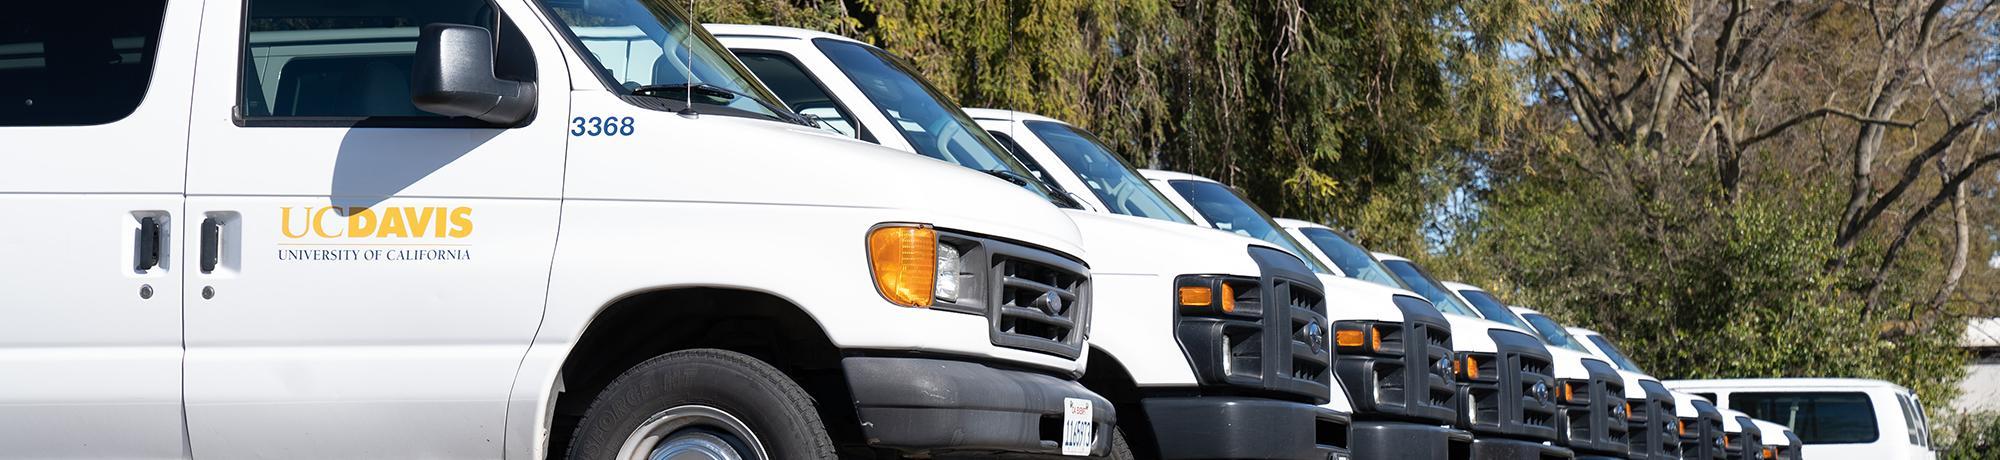 UC Davis vans parked in a row